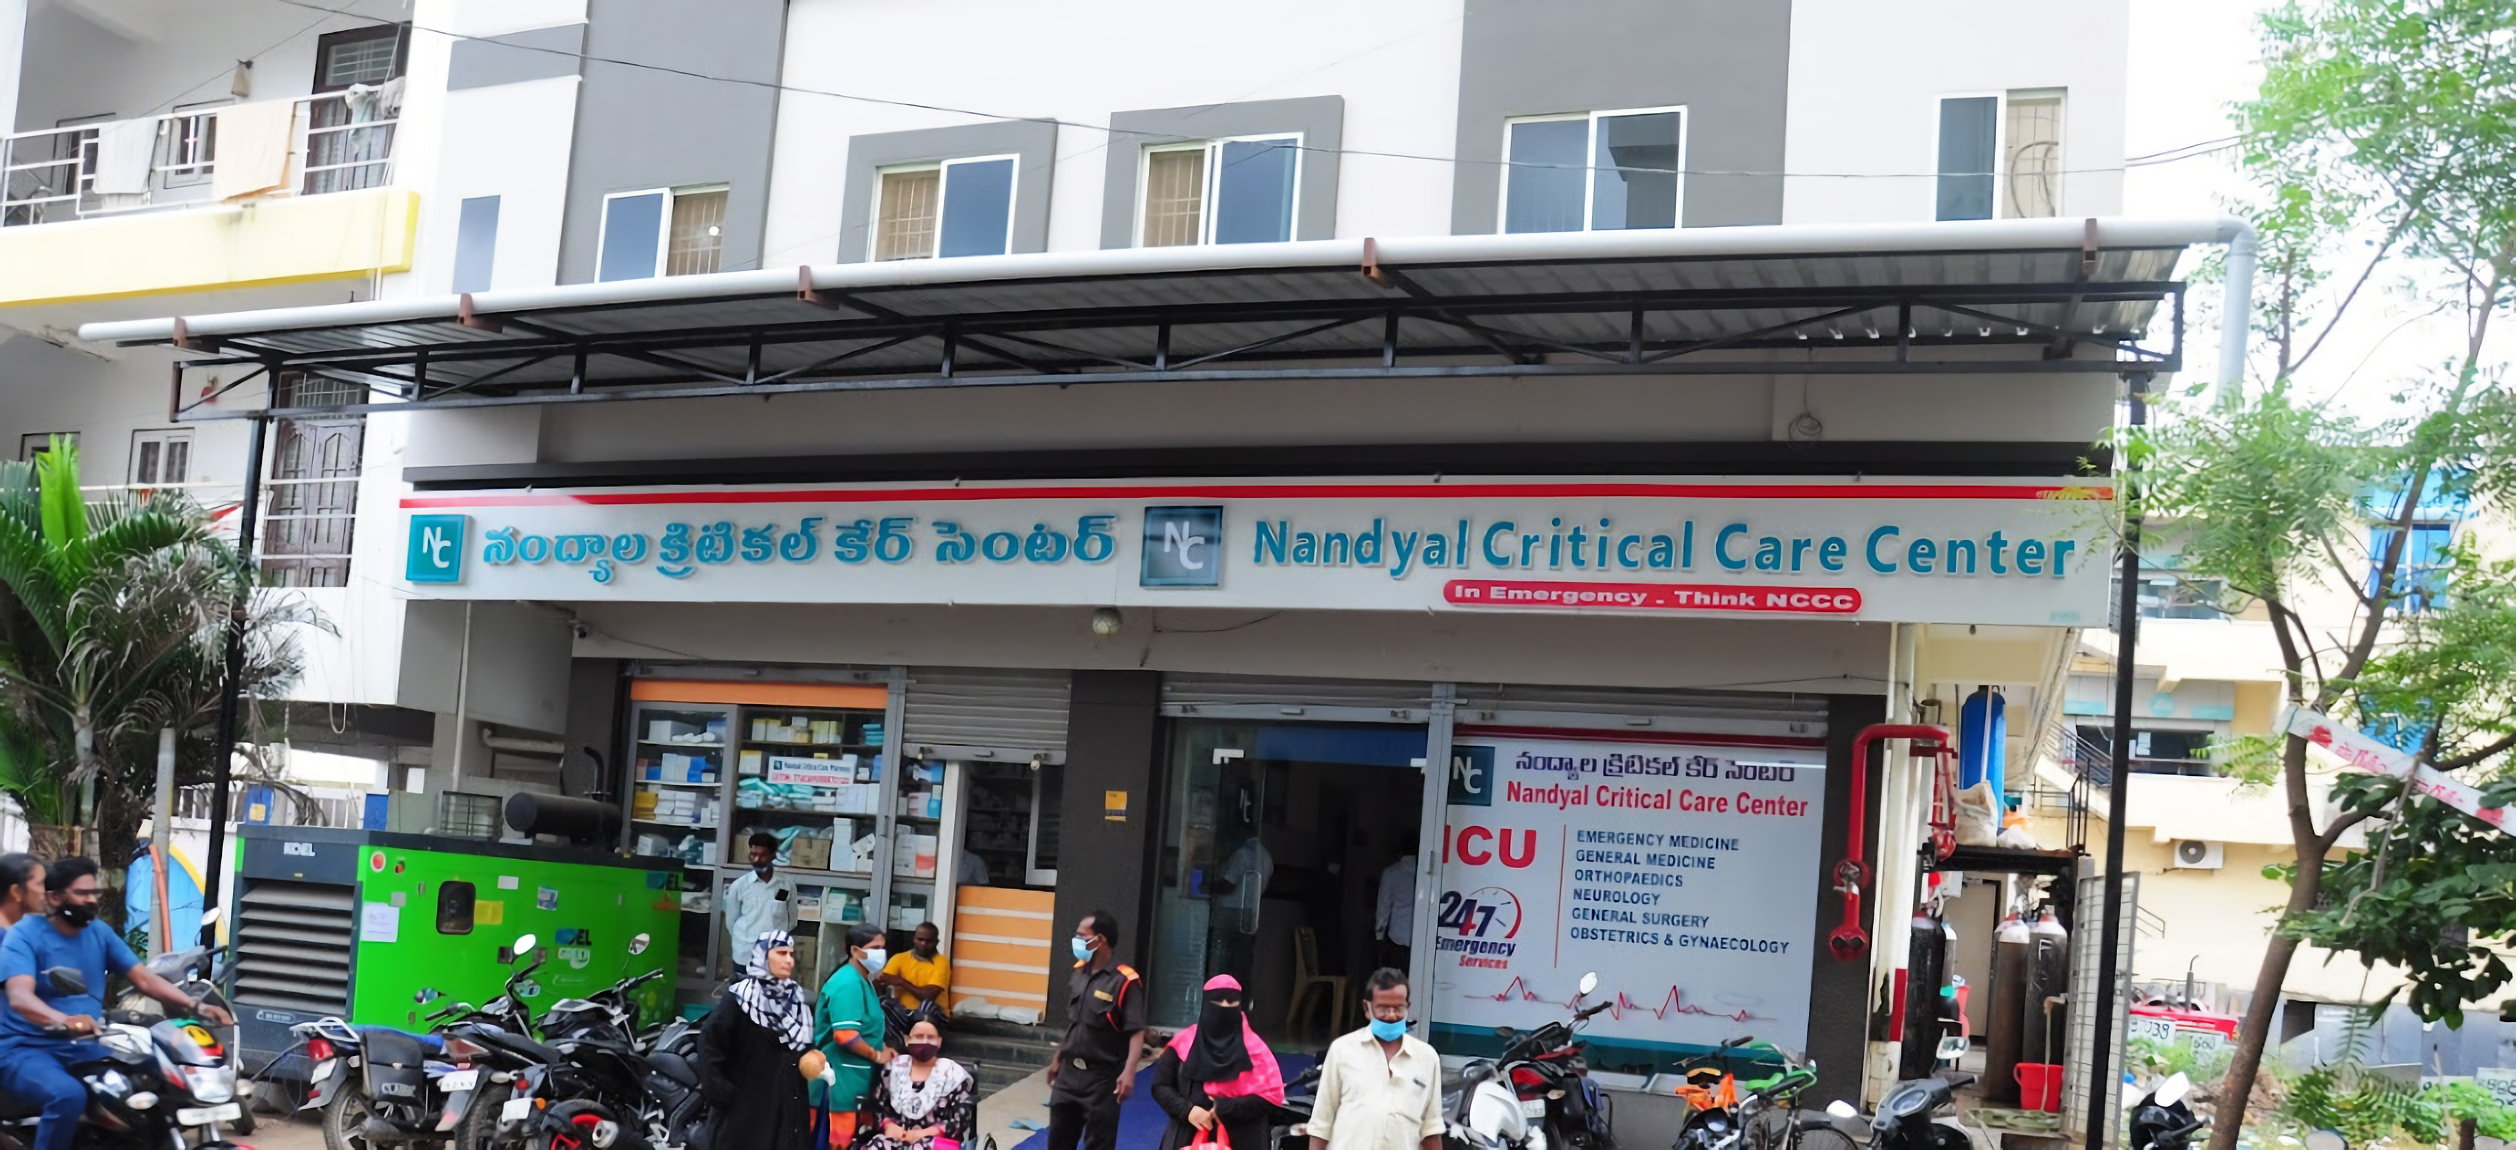 Nandyal Critical Care Center